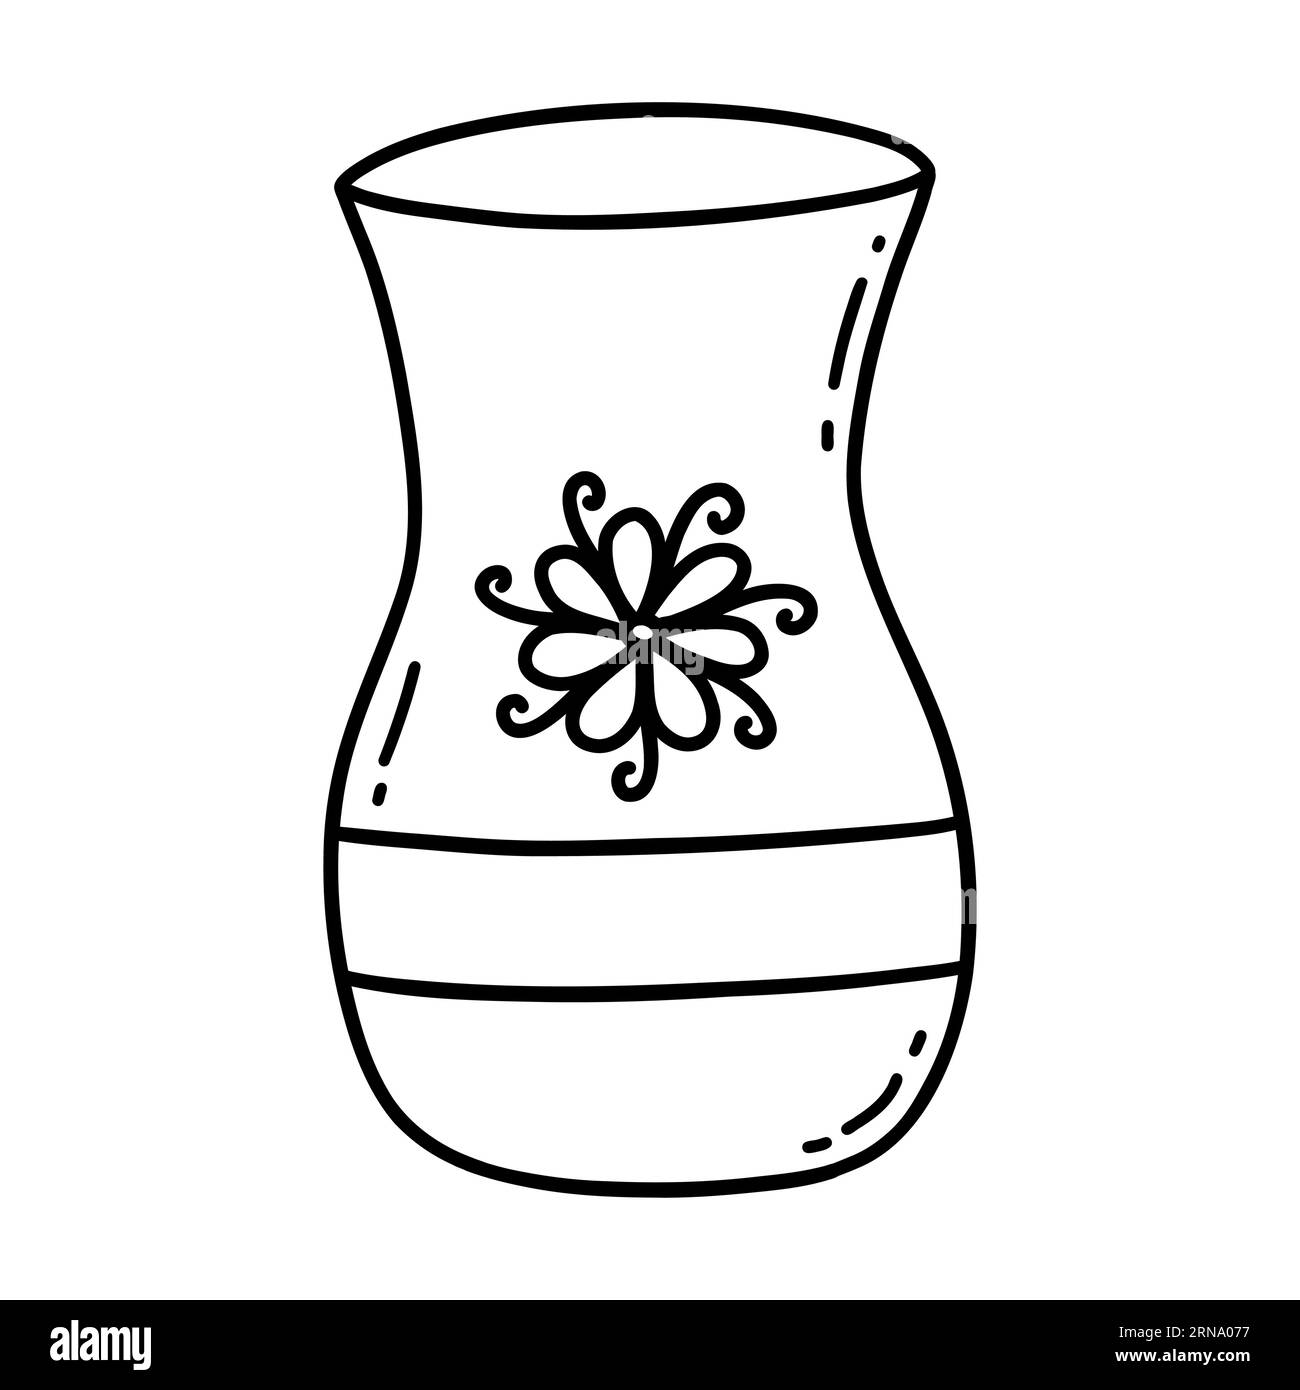 Pichet antique pour le lait ou l'eau. Imprimé fleuri. Vieux pot en argile ou vase en céramique. Dessin à la main de l'illustration isolée en noir et blanc. Icône ou voiture Illustration de Vecteur